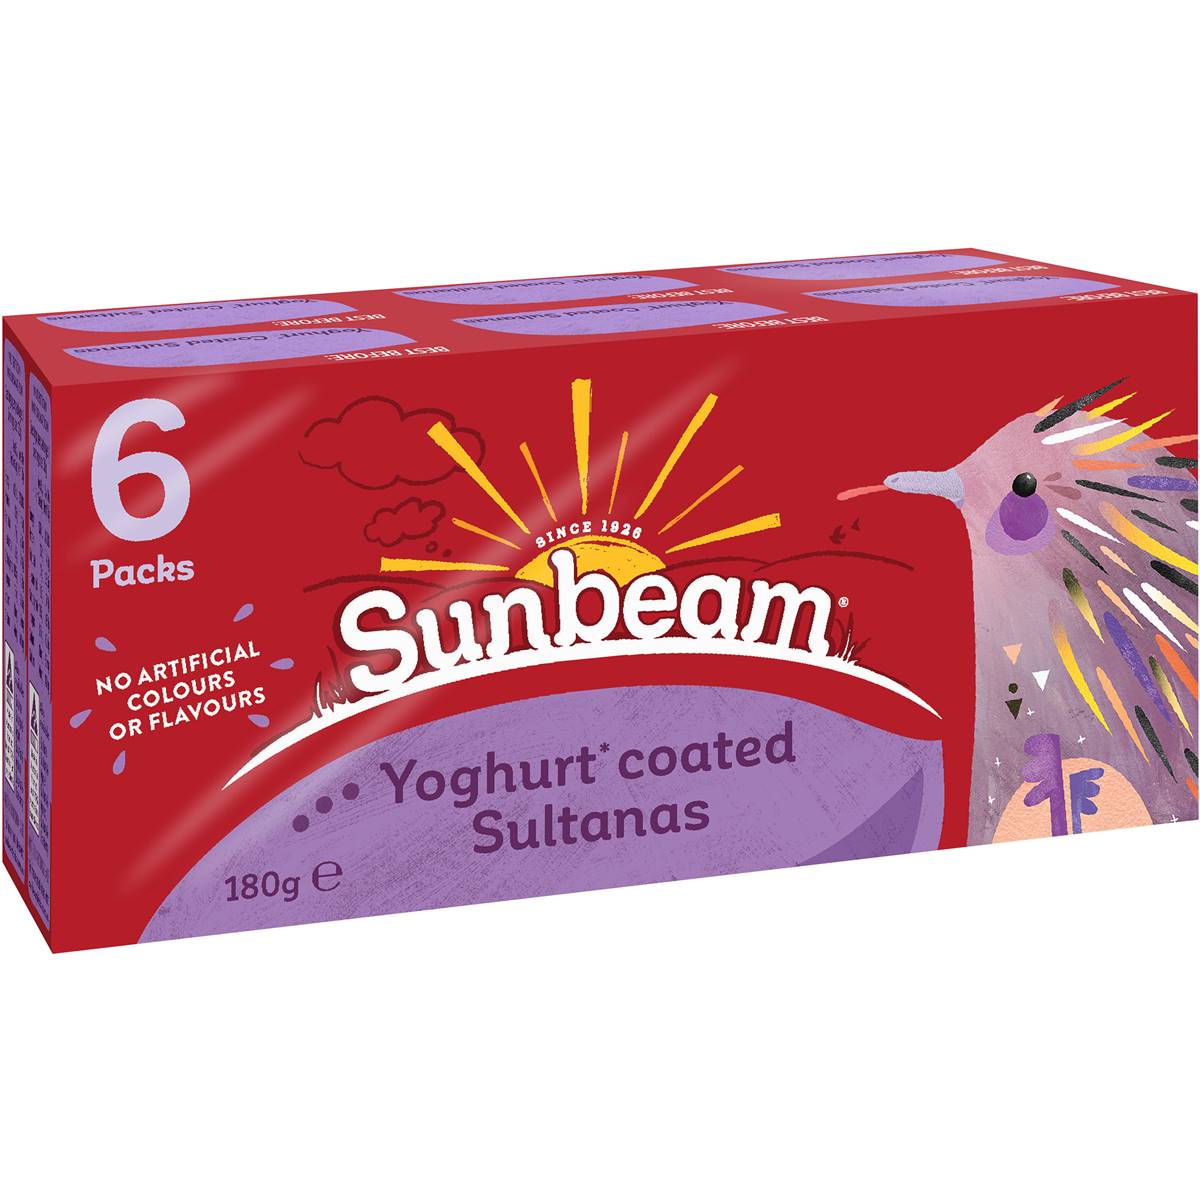 Calories in Sunbeam Yoghurt Coated Sultanas